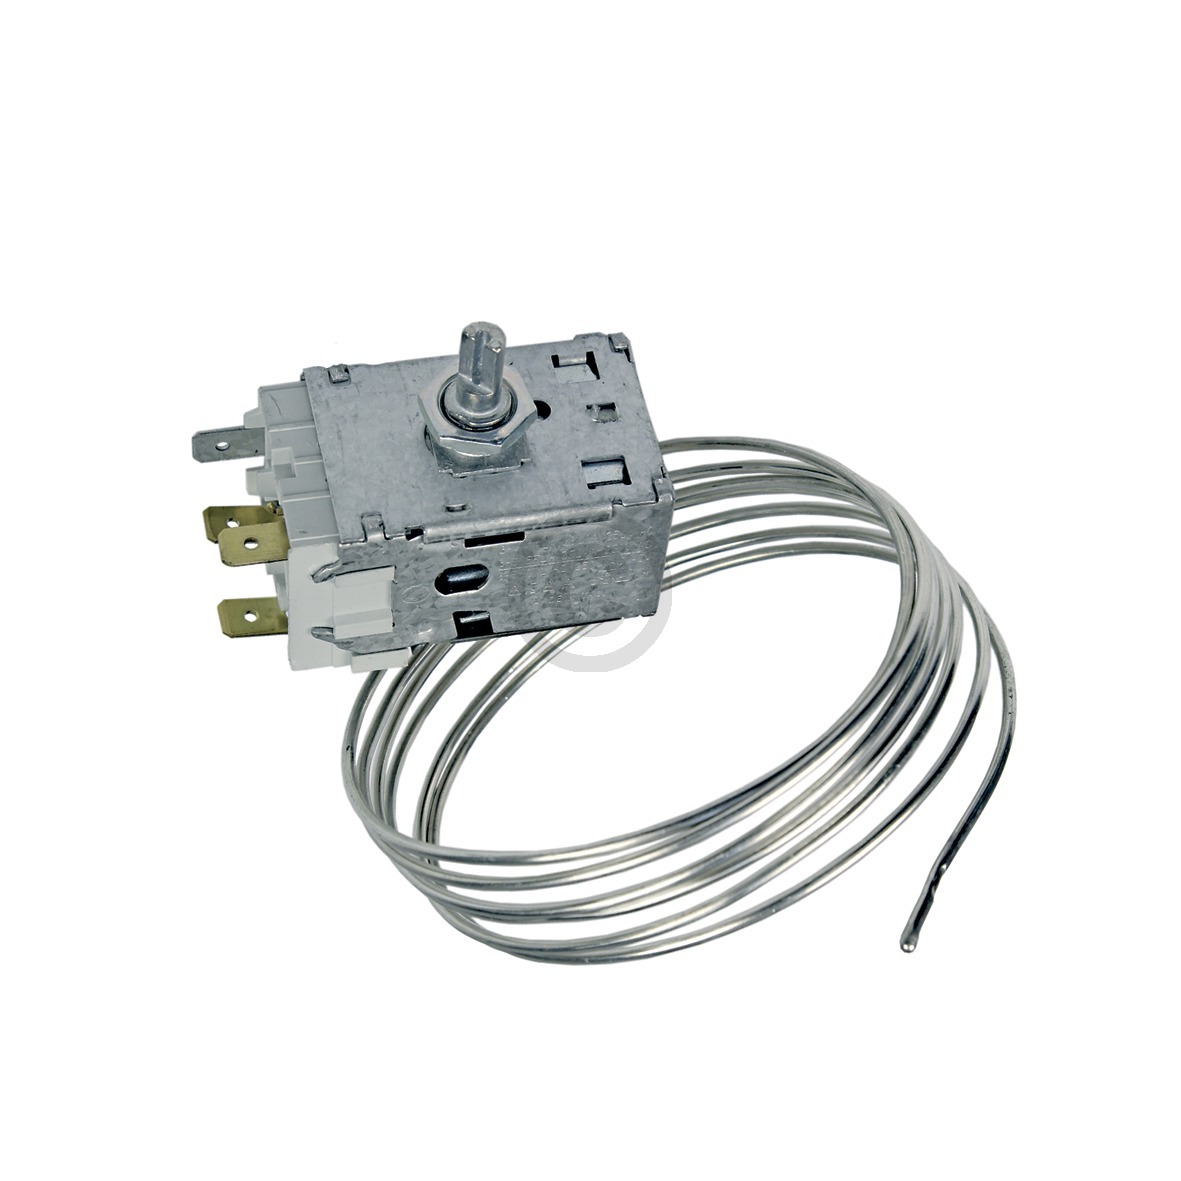 Thermostat K59-L2139/500 Ranco 1600mm Kapillarrohr 3x6,3mm AMP Whirlpool